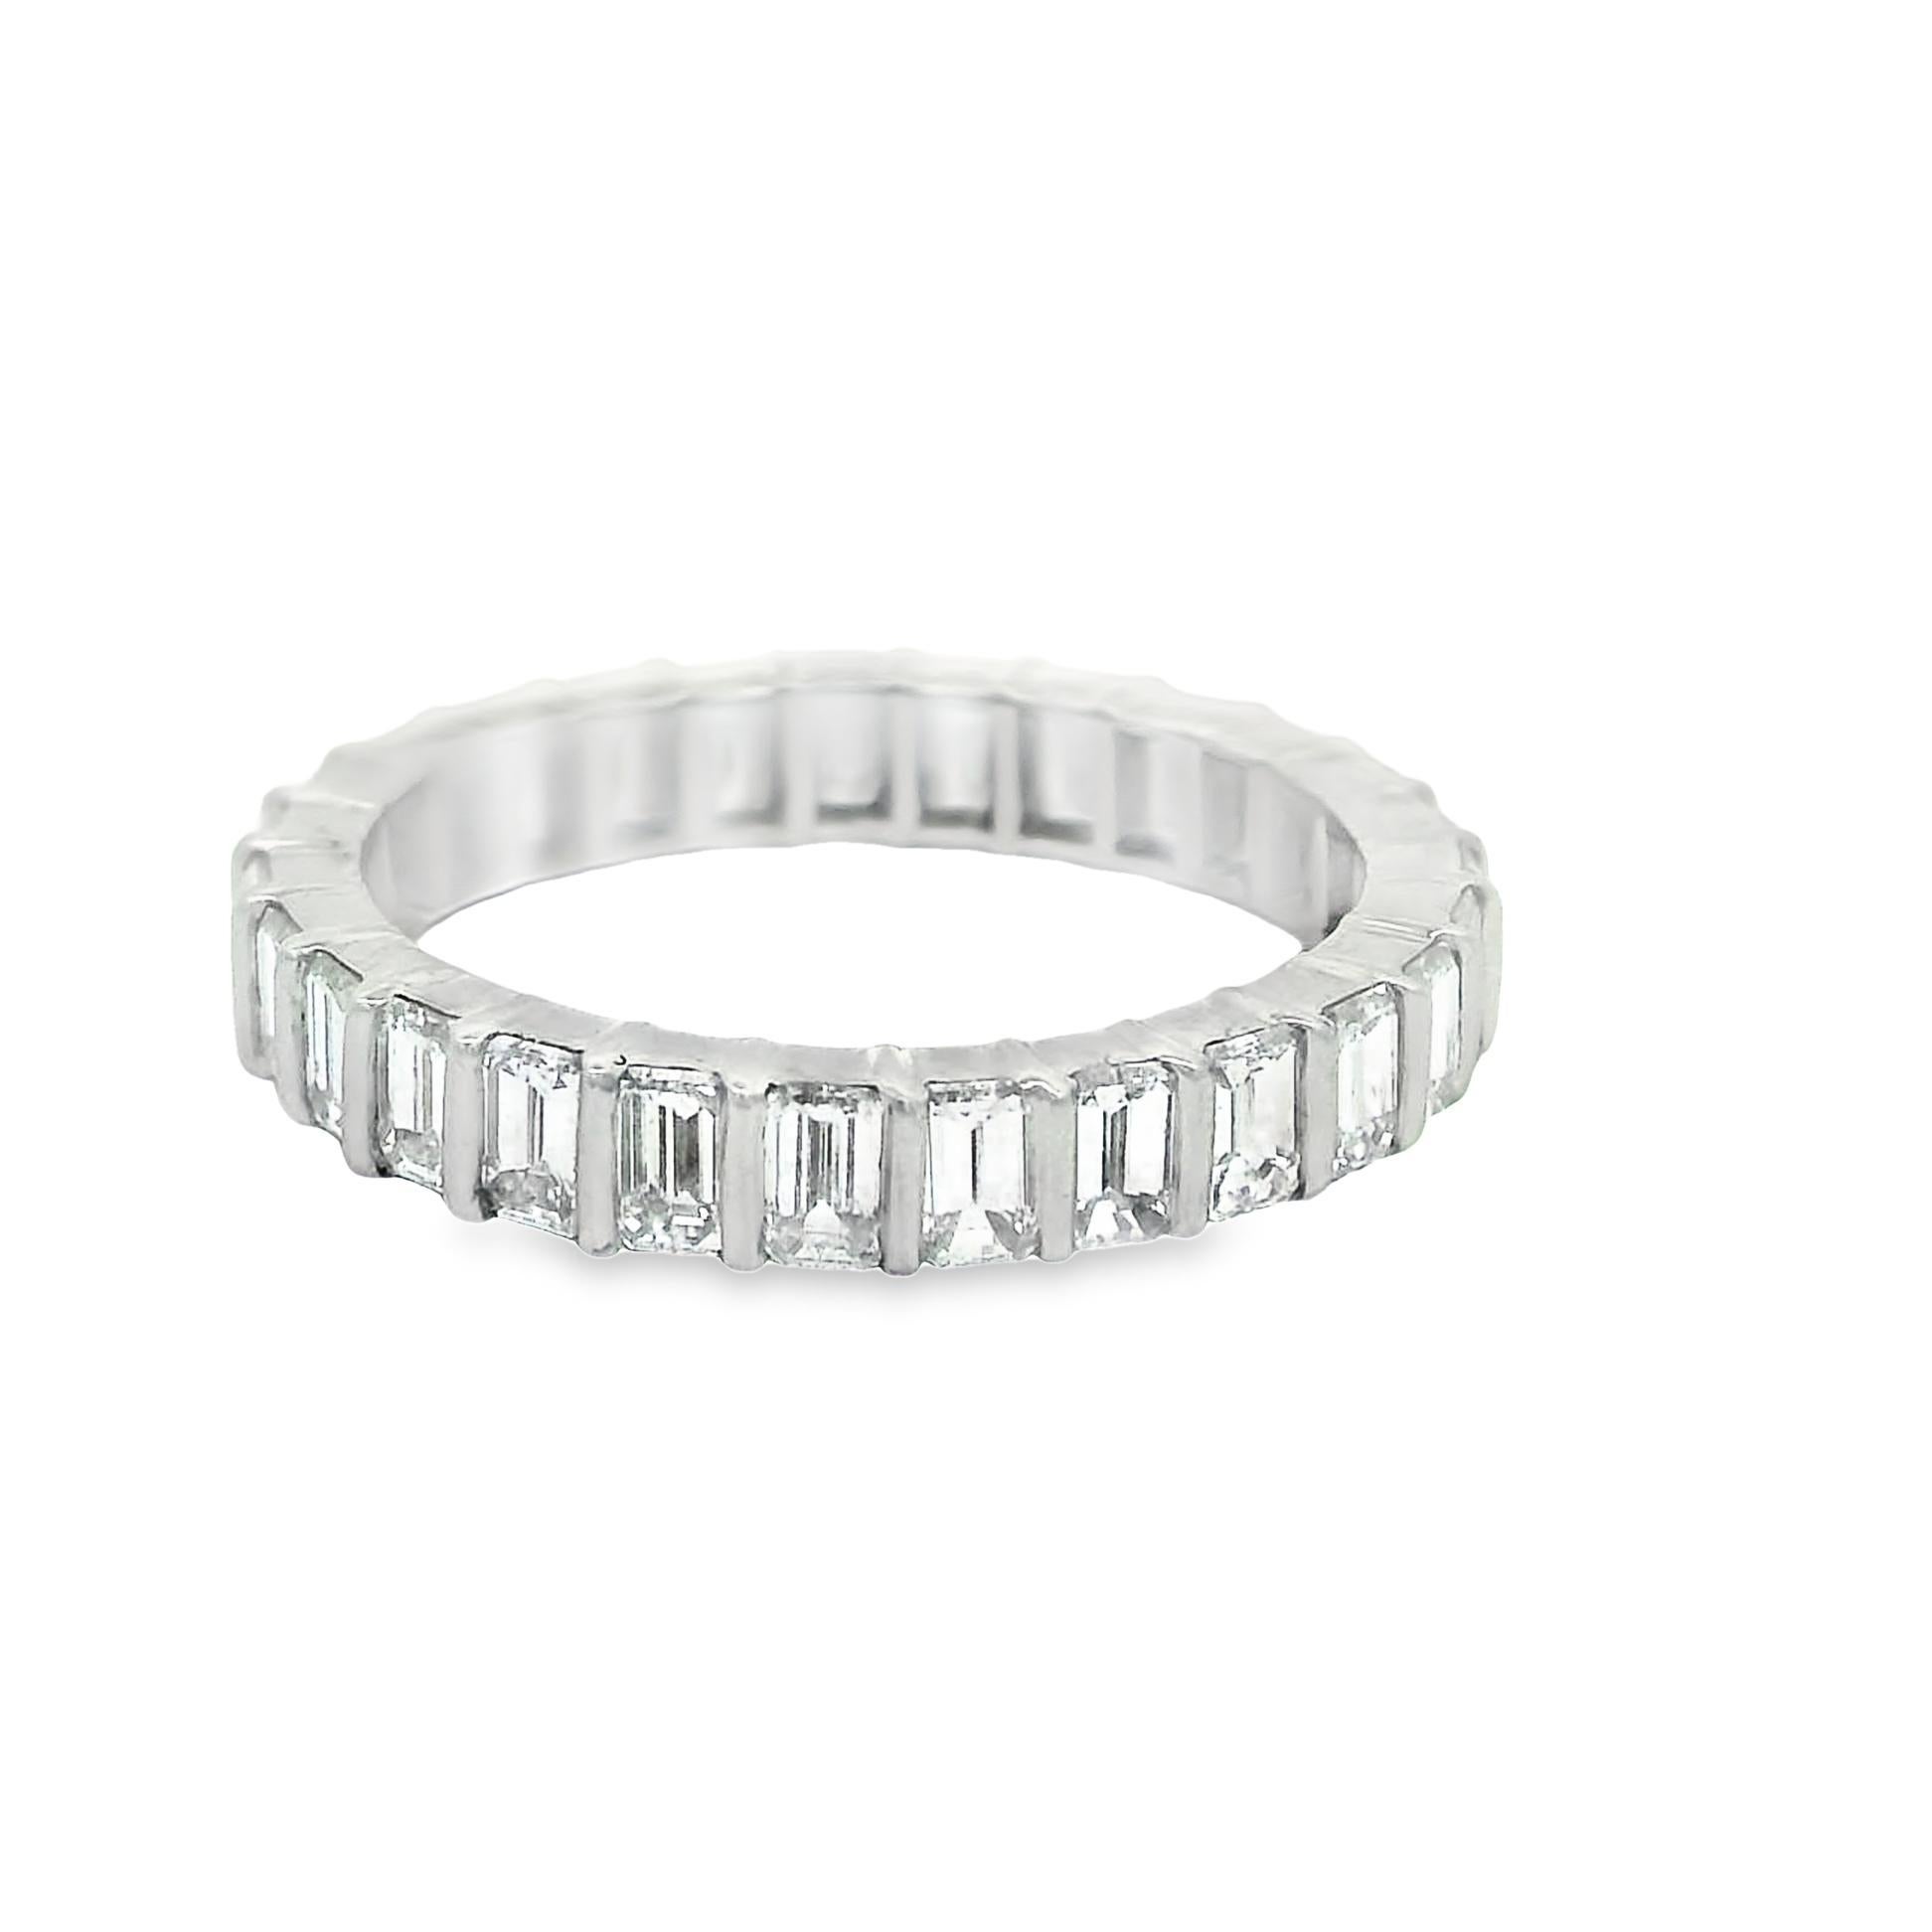 Ein klassischer Diamant-Ewigkeitsring mit 2,18 Karat Diamanten im Baguetteschliff. Sie sind in Größe und Farbe perfekt aufeinander abgestimmt, so dass es sich um eine beeindruckende Reihe von Diamanten handelt. Handgefertigt aus Platin und bereit